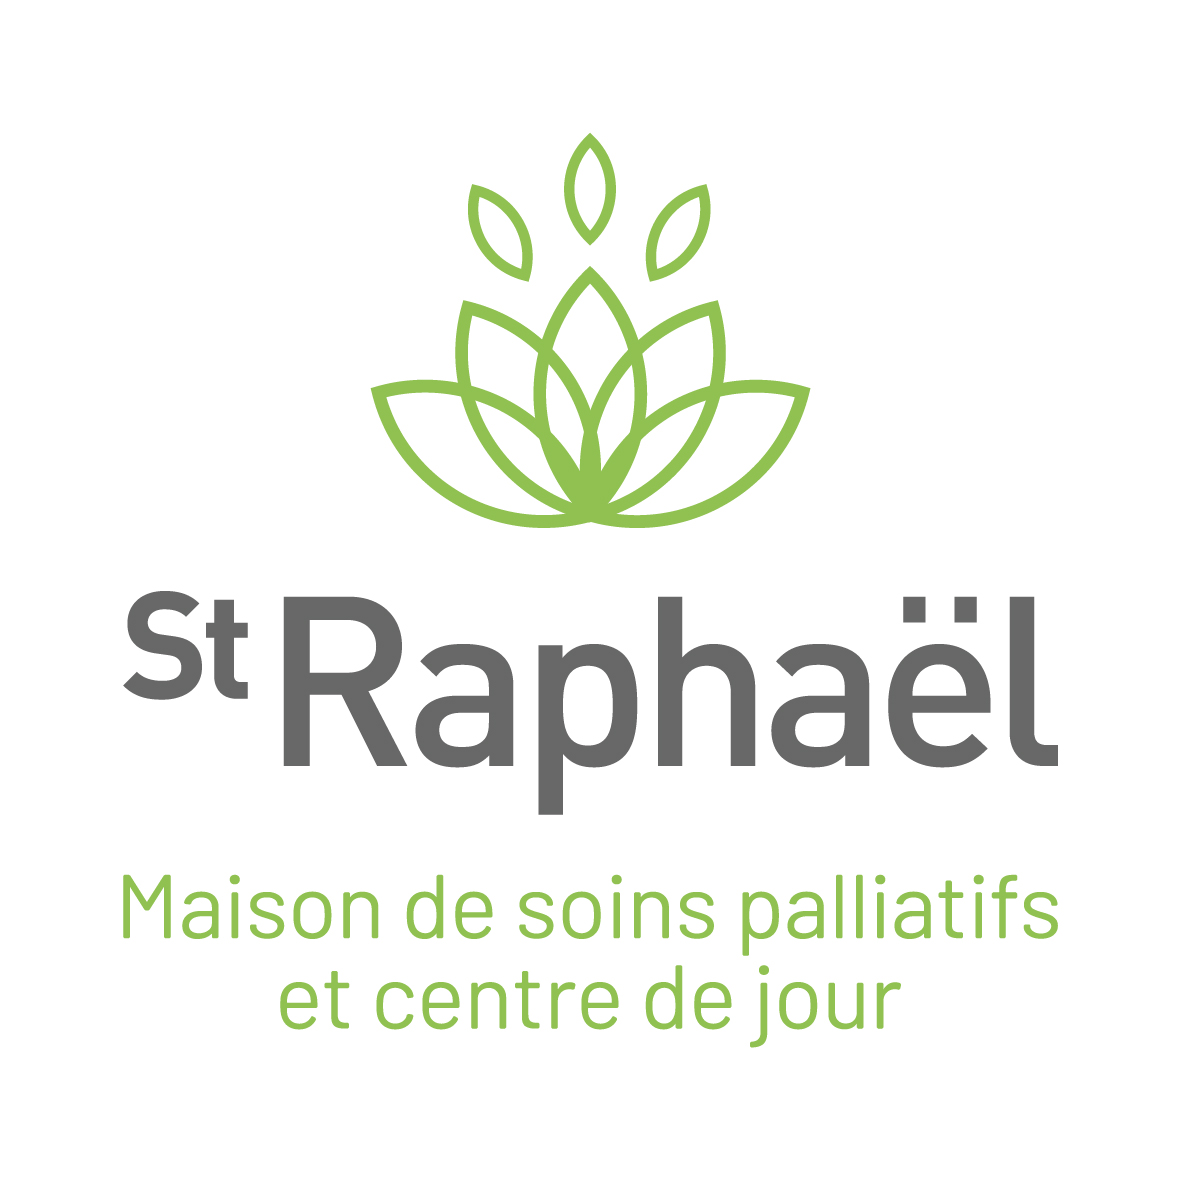 Maison de soins palliatifs et centre de jour St-Raphaël